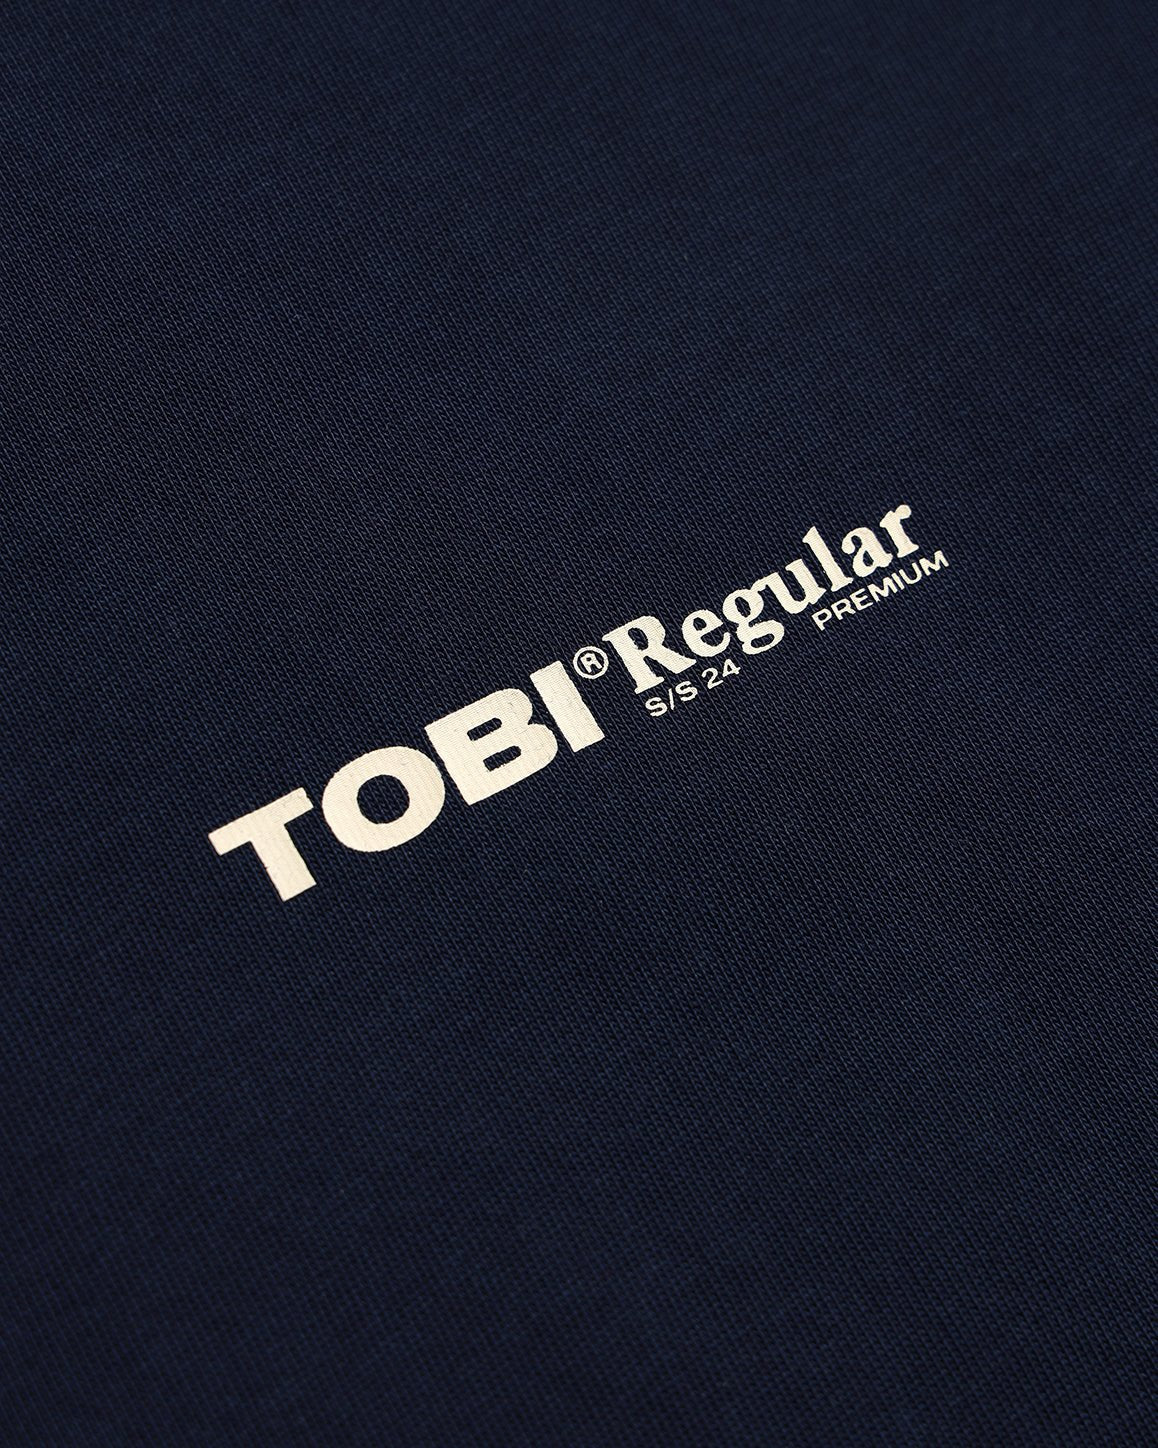 TOBI Regular Boxy Tee - Navy - TOBI